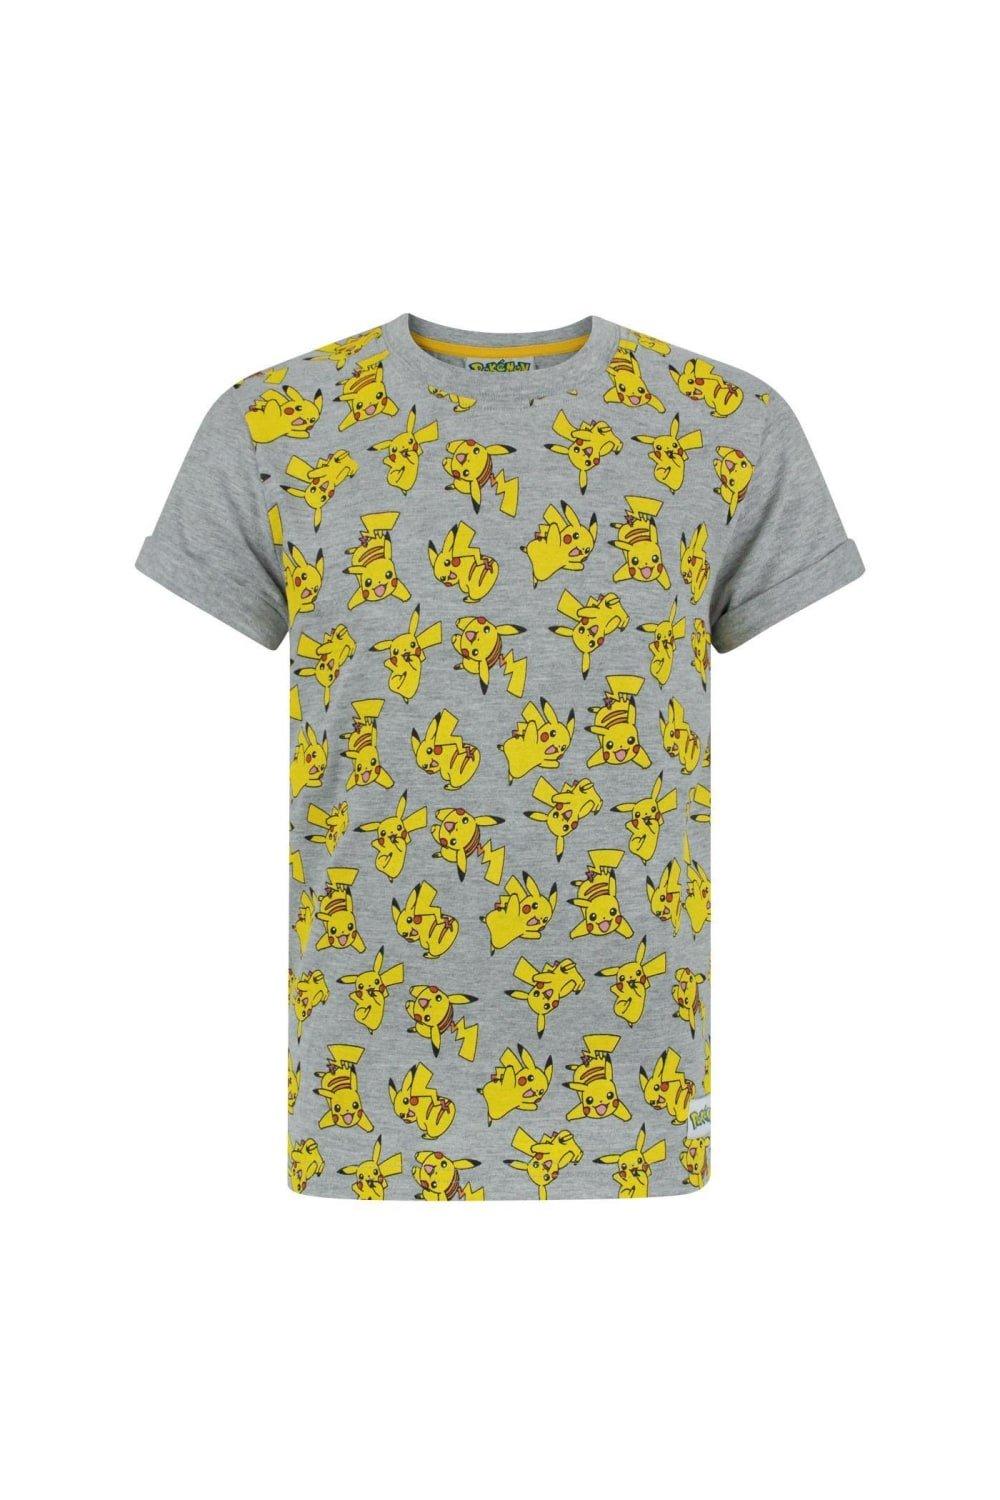 All-Over Pikachu Design T-Shirt